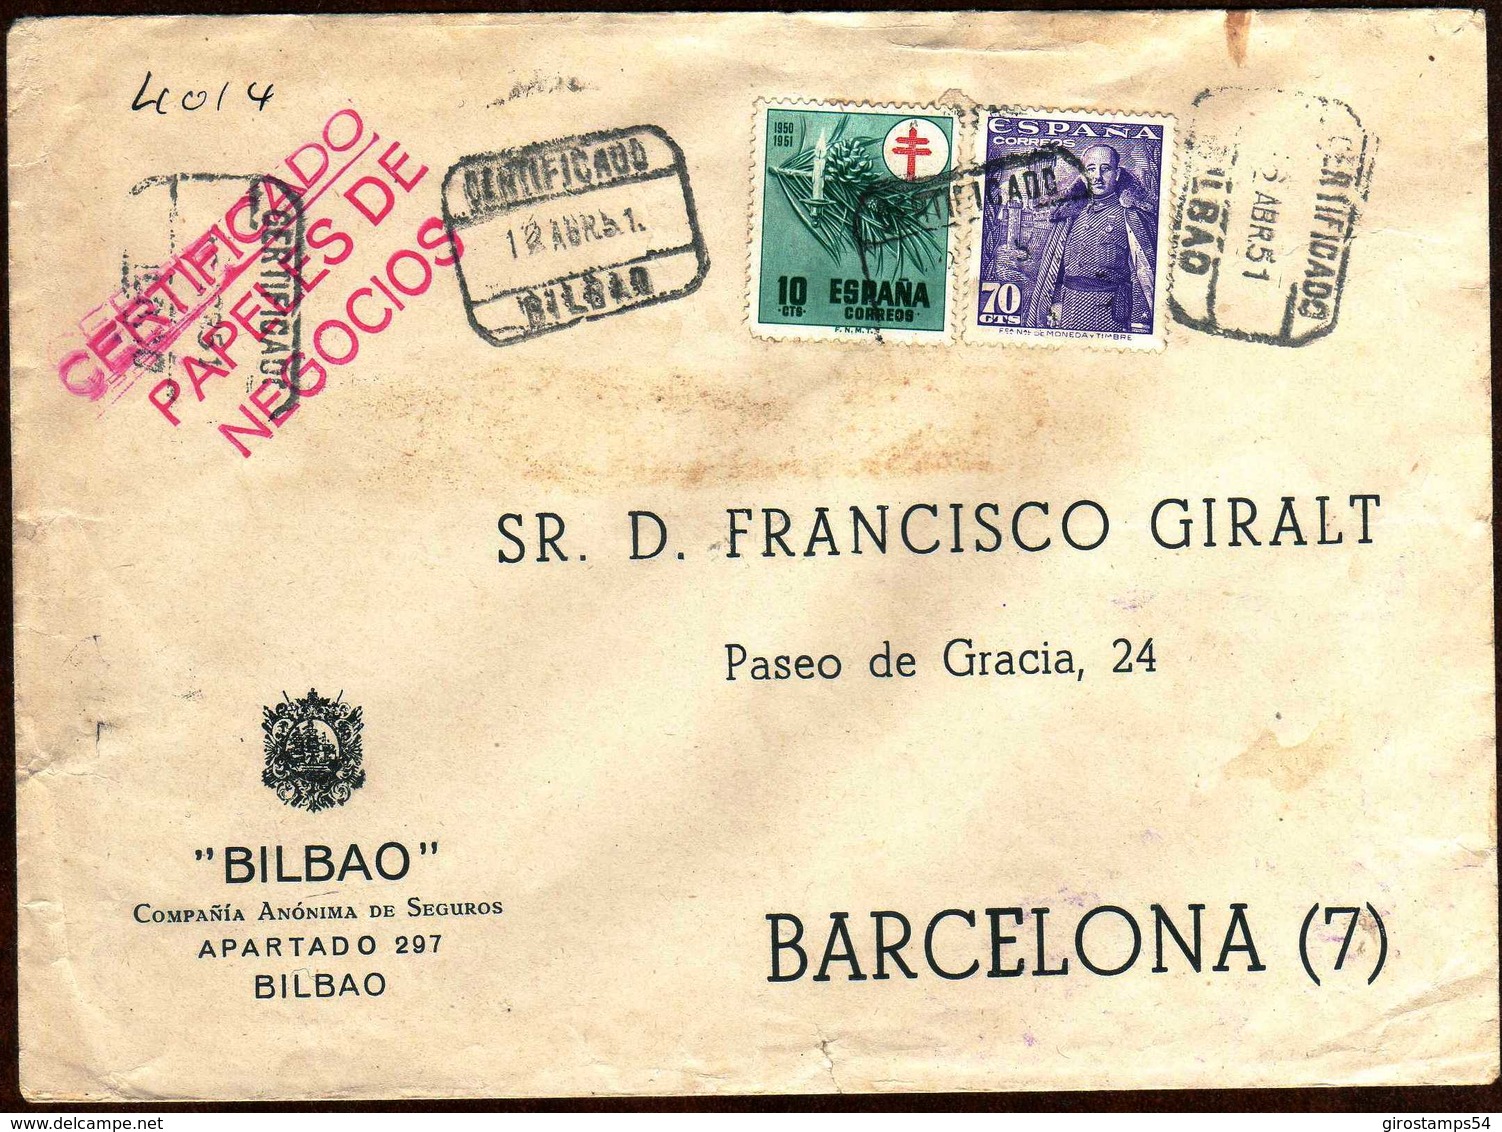 Girostamps54.- SOBRE COMERCIAL CIRCULADO POR CORREO CERTIFICADO DE BILBAO A BARCELONA EN 1951 - Cartas & Documentos